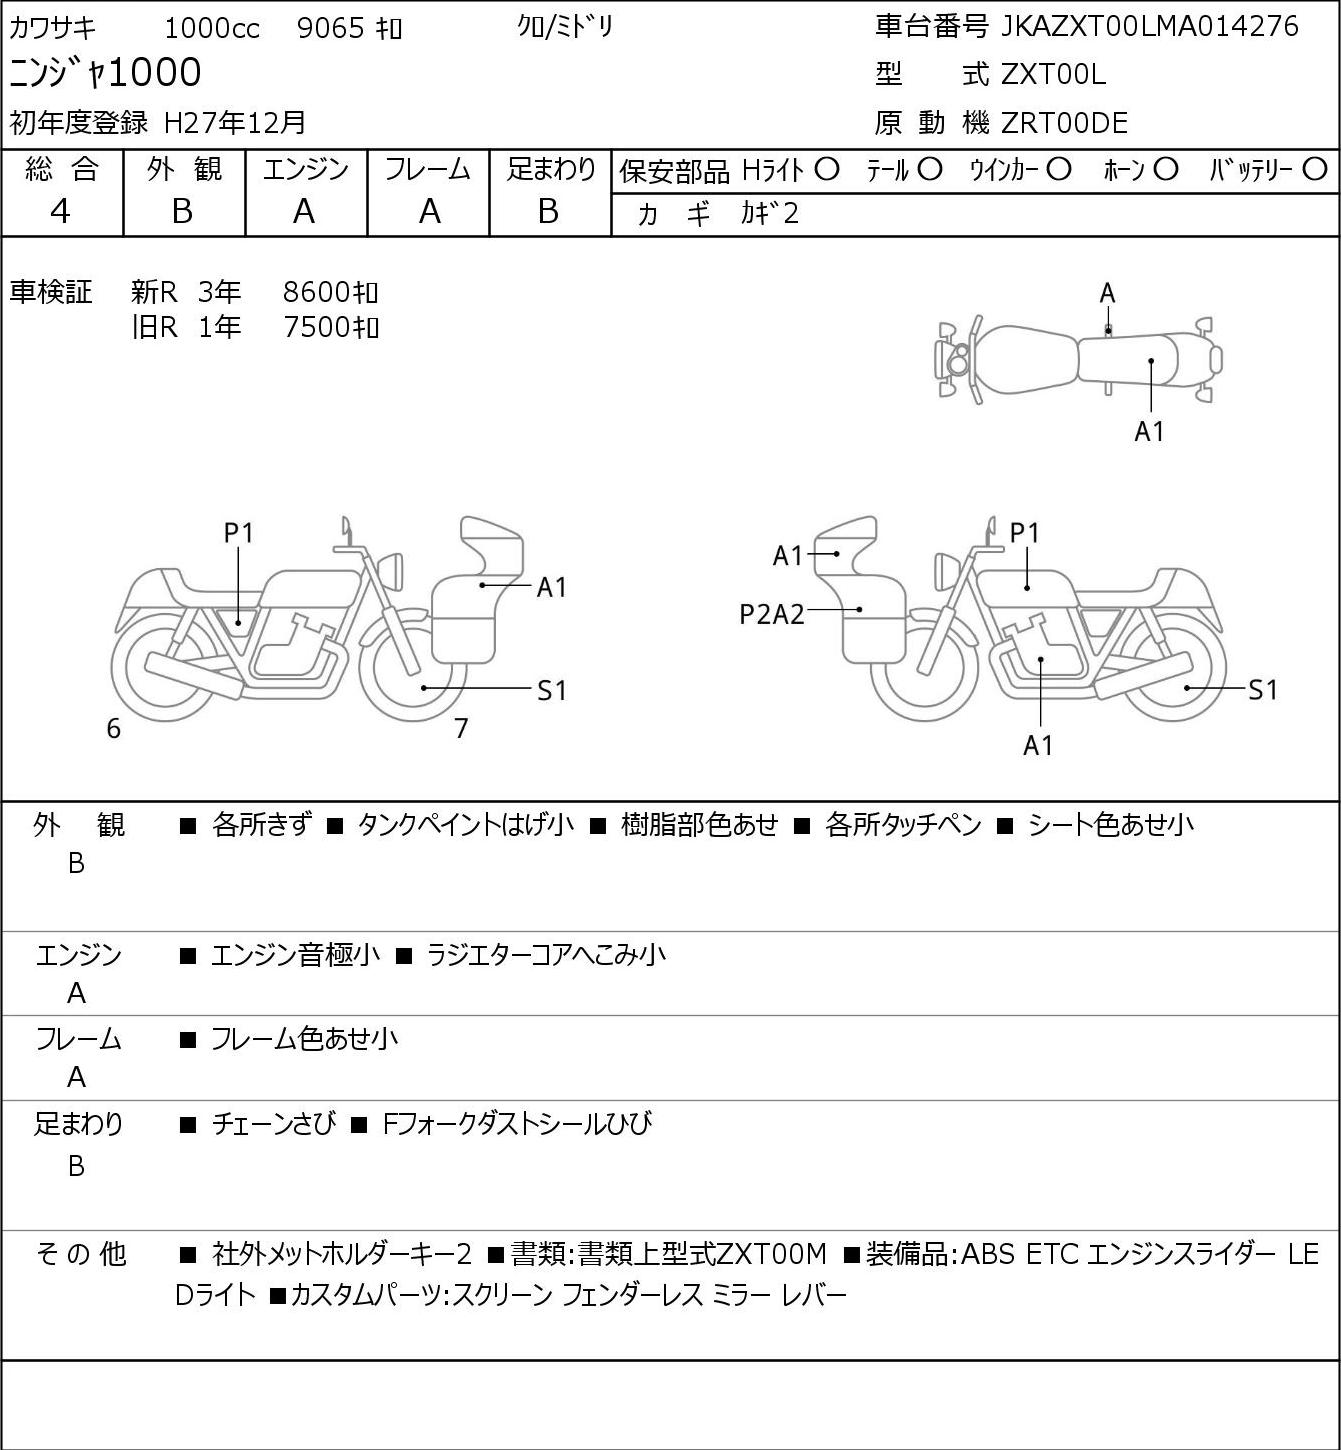 Kawasaki NINJA 1000 ZXT00L 2015г. 9065